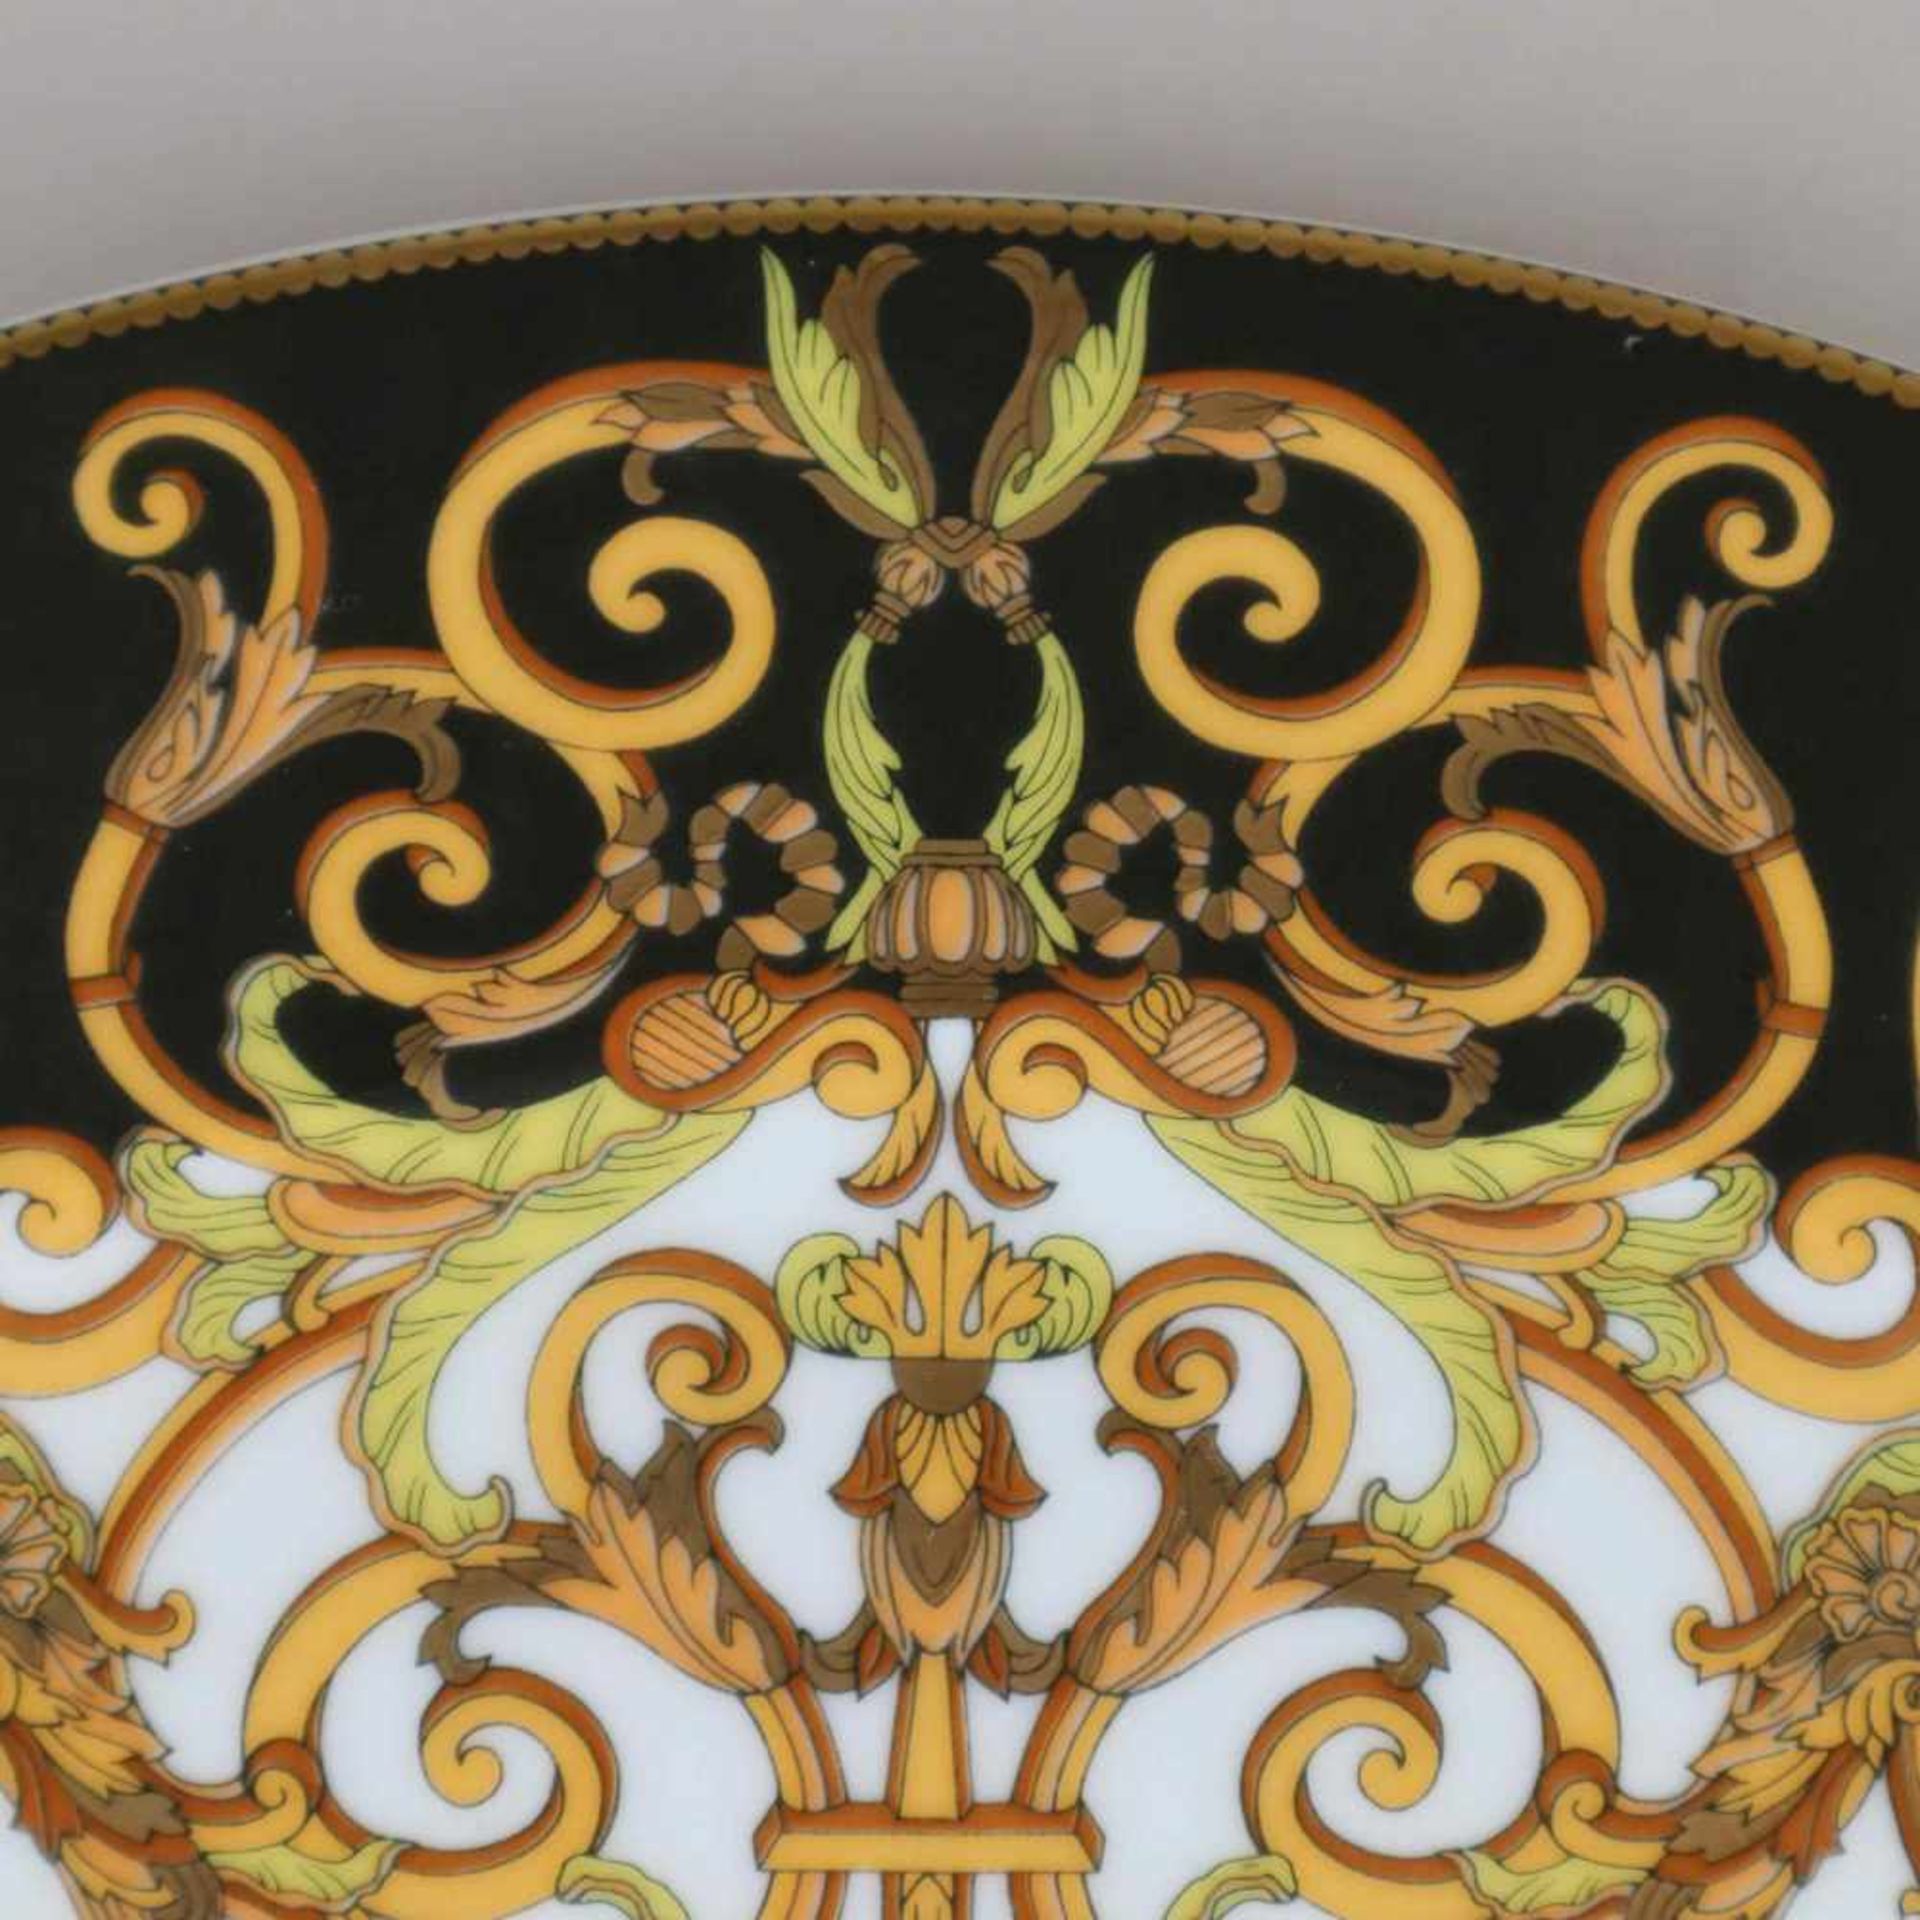 Fünf Platzteller "Versace Barocco" - Rosenthal, Entwurf Gianni Versace, floraler Dekor "Barocco" - Bild 7 aus 9